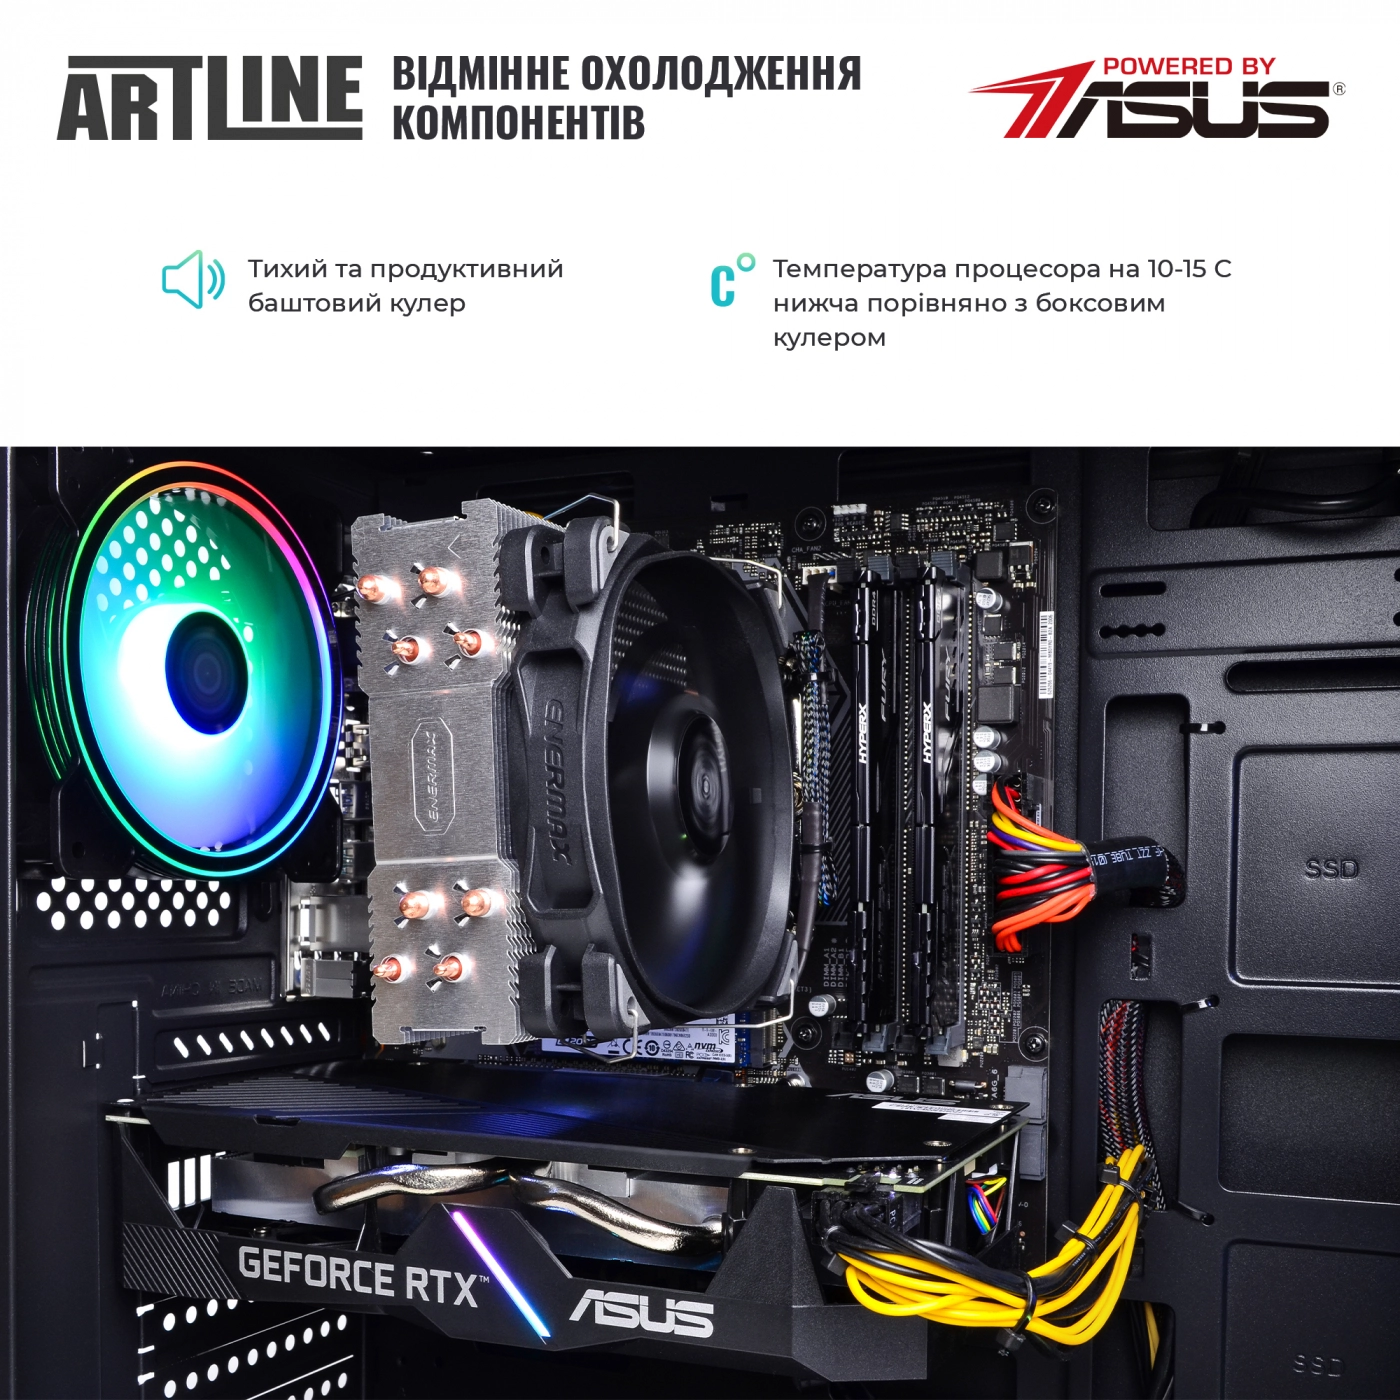 Купить Компьютер ARTLINE Gaming X53v37 - фото 7